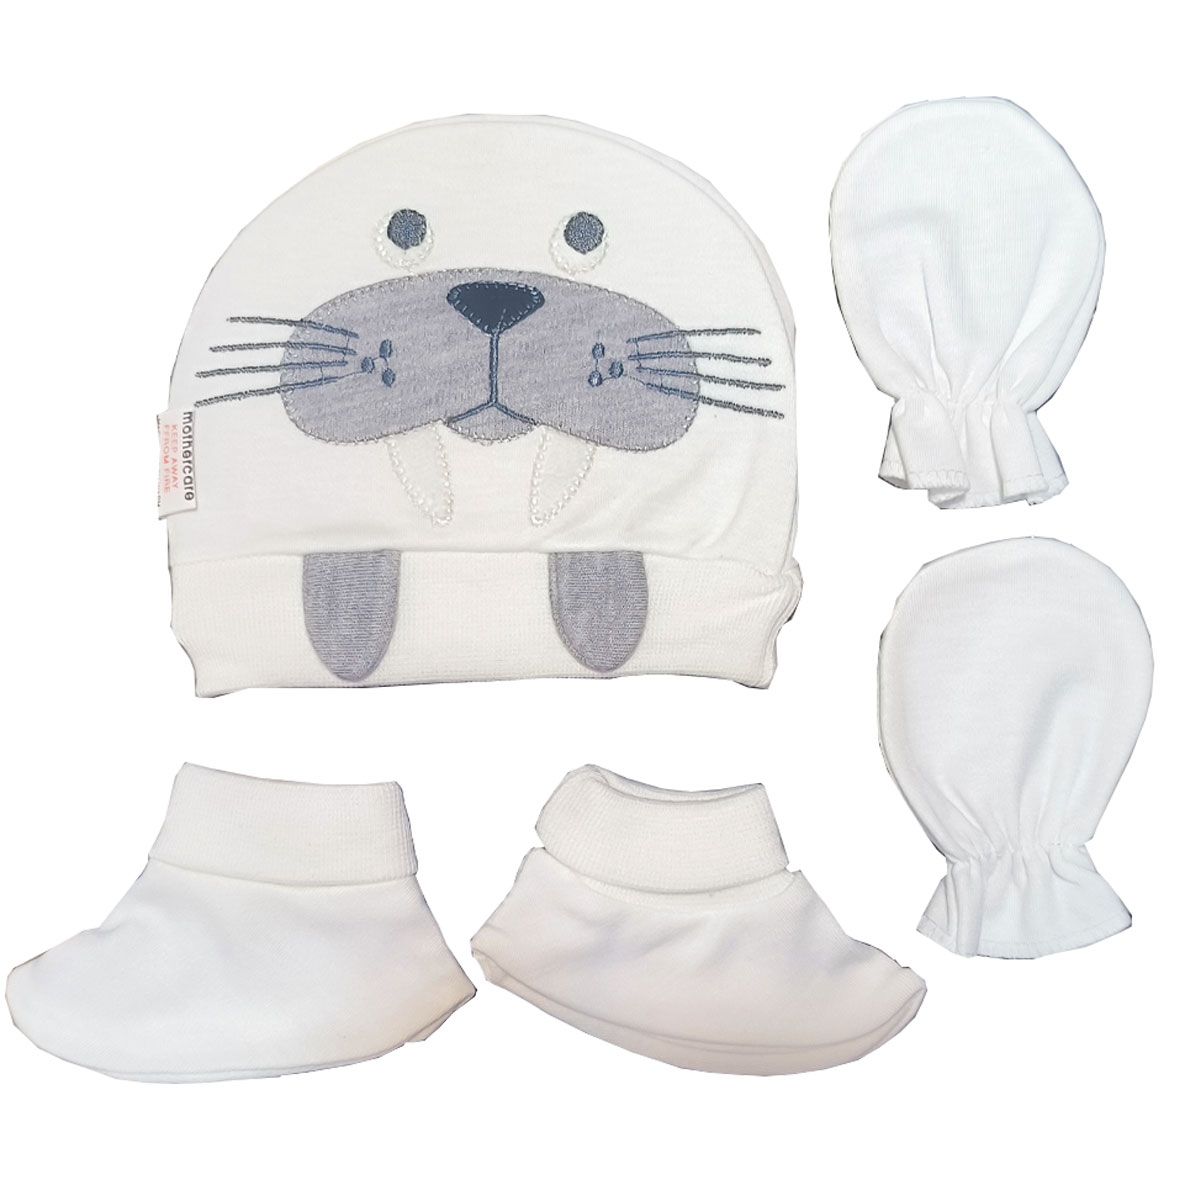 ست کلاه و دستکش و پاپوش نوزادی مادرکر مدل seal -  - 1